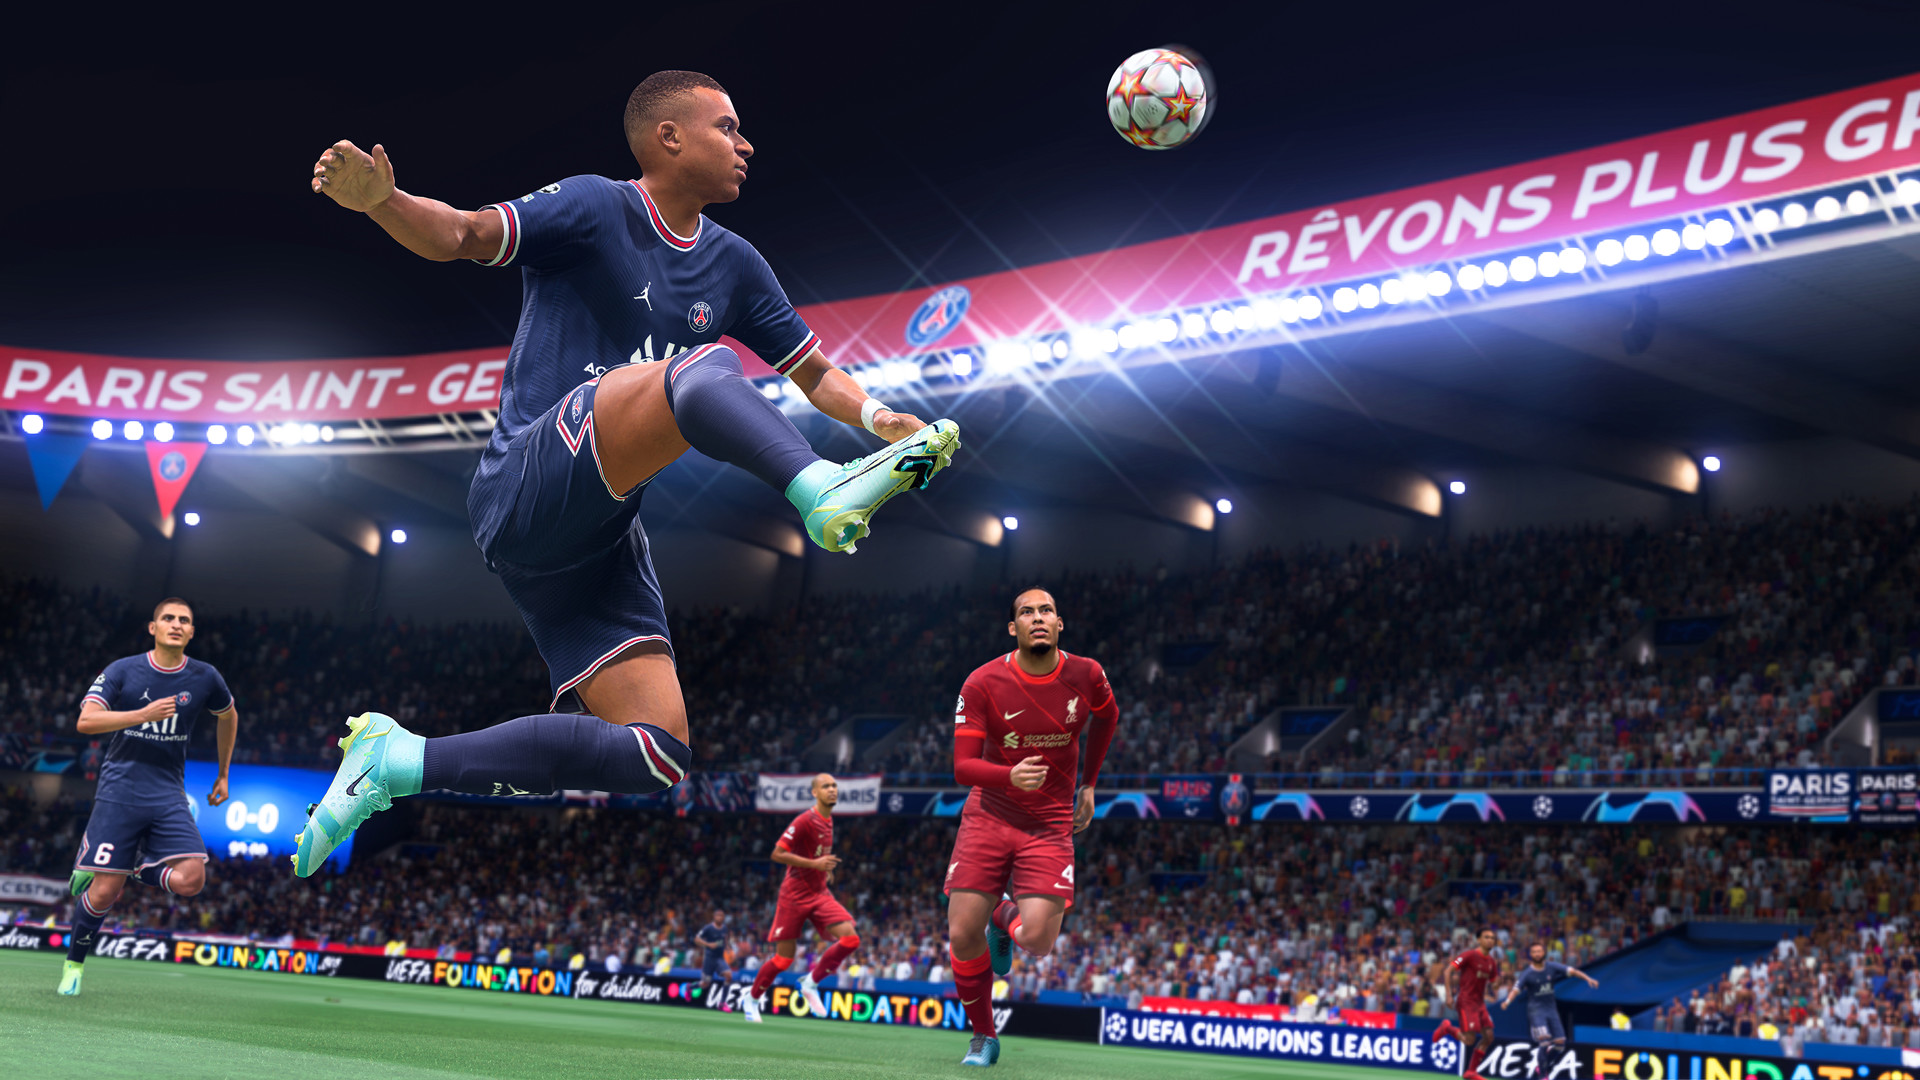 FIFA 22 has been released worldwide